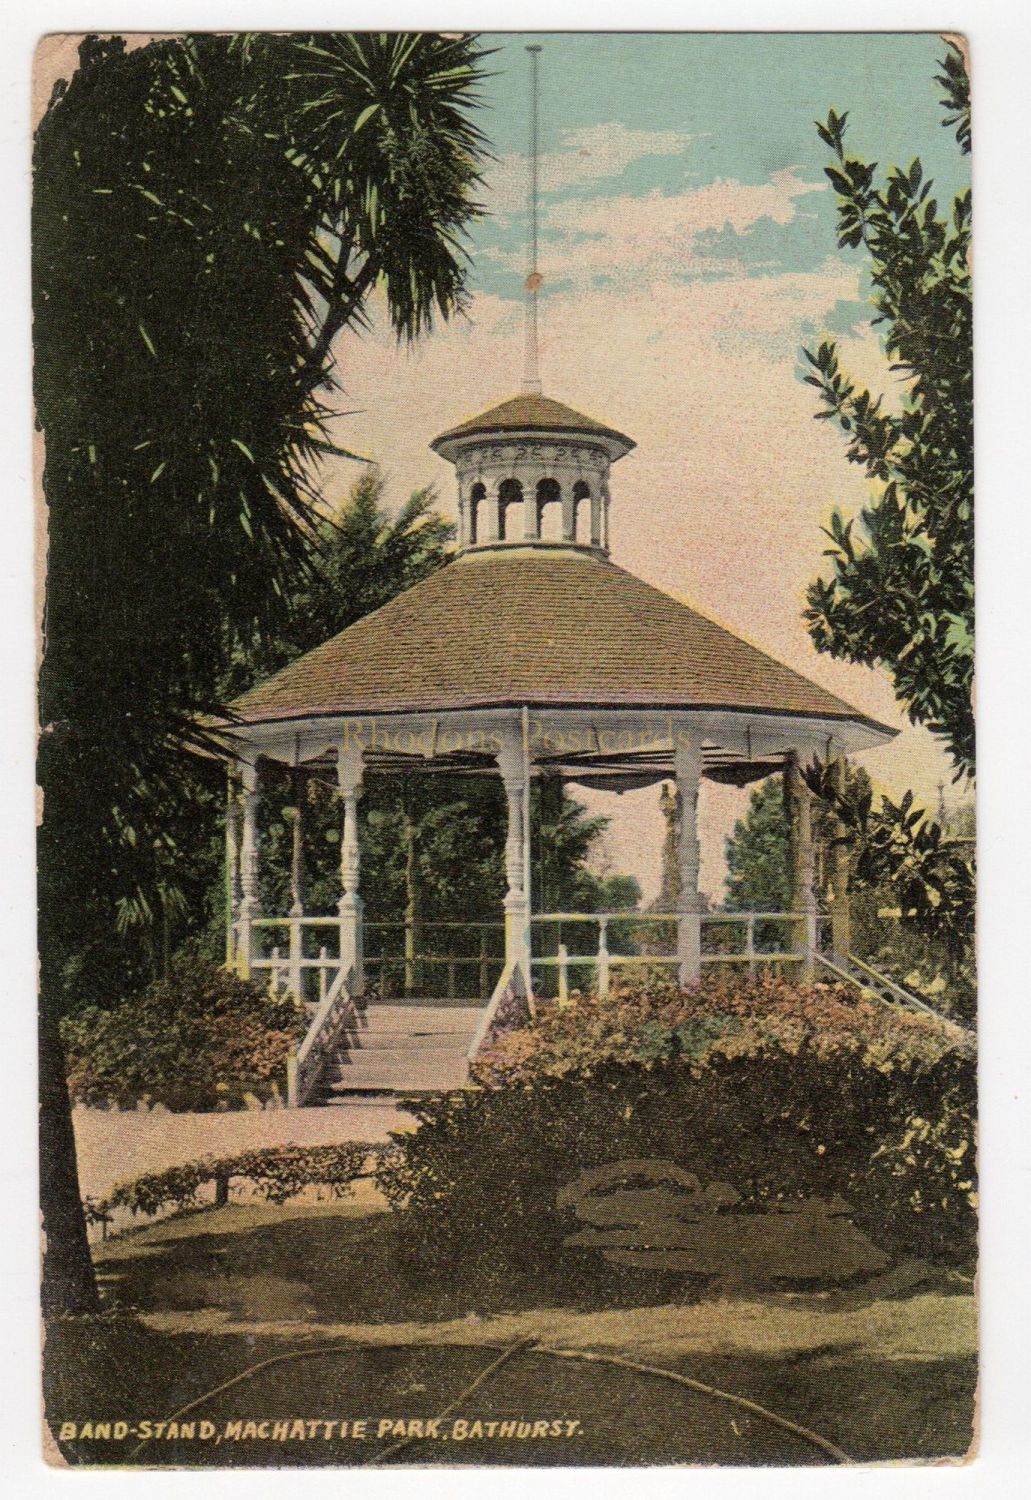 Bandstand, MacHattie Park, Bathhurst, NSW, Australia - Early 1900s Postcard